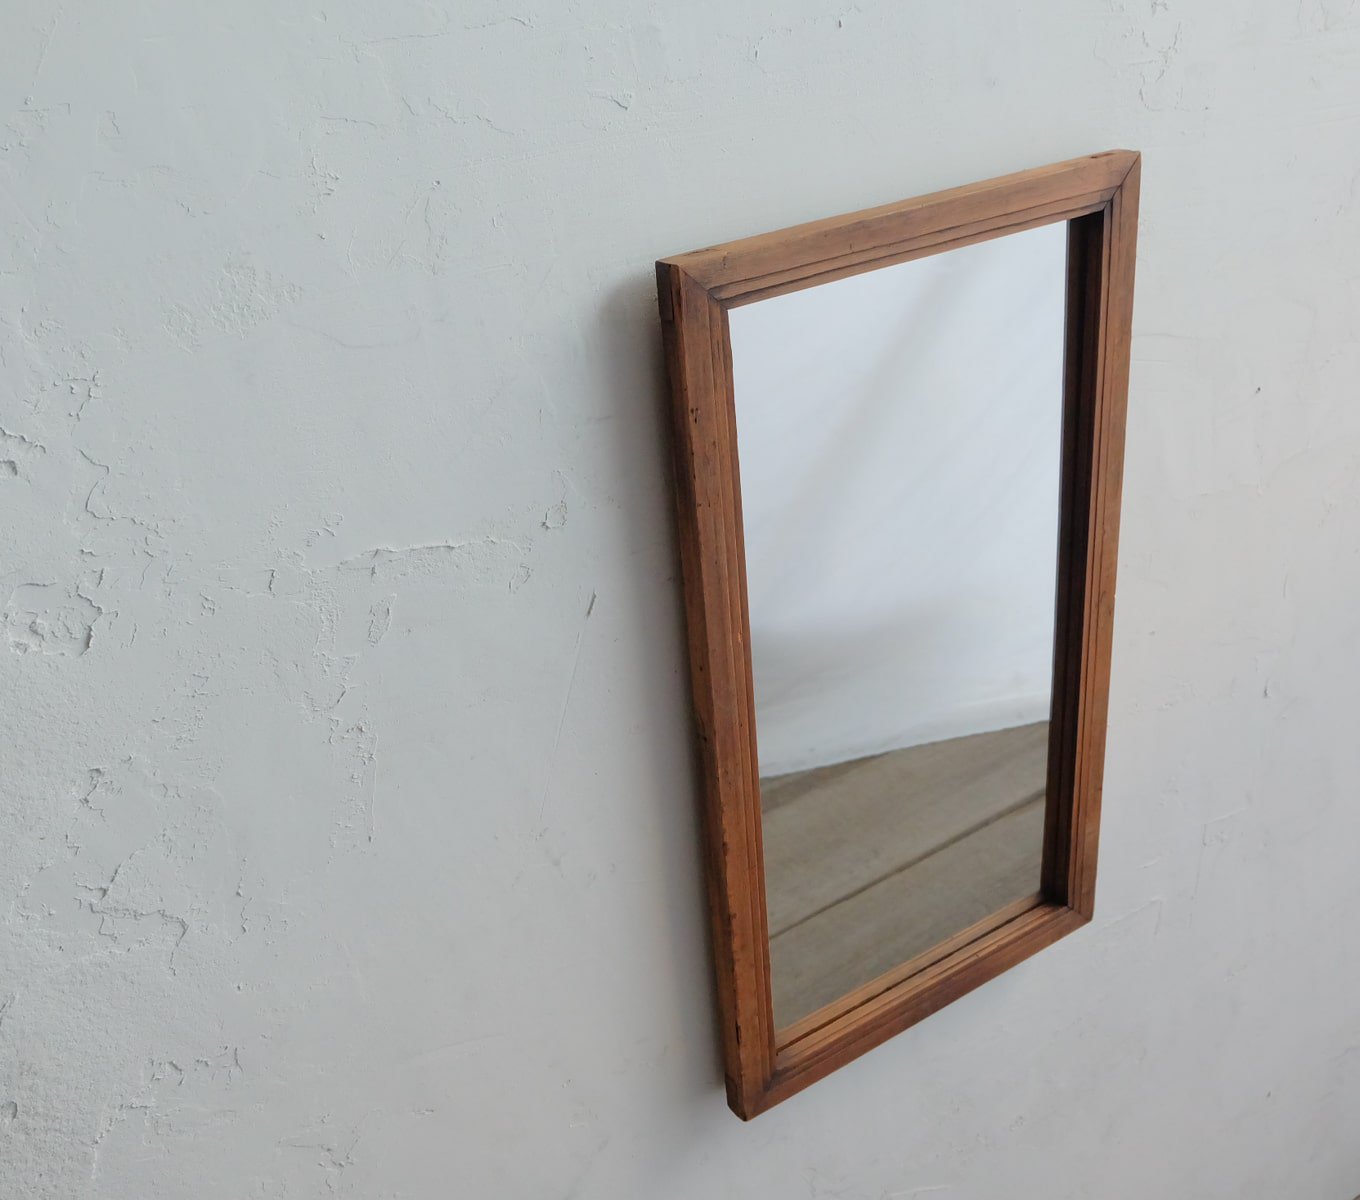 アンティークの縦長の鏡の通販 | ライフスタイルショップICCA Online shop